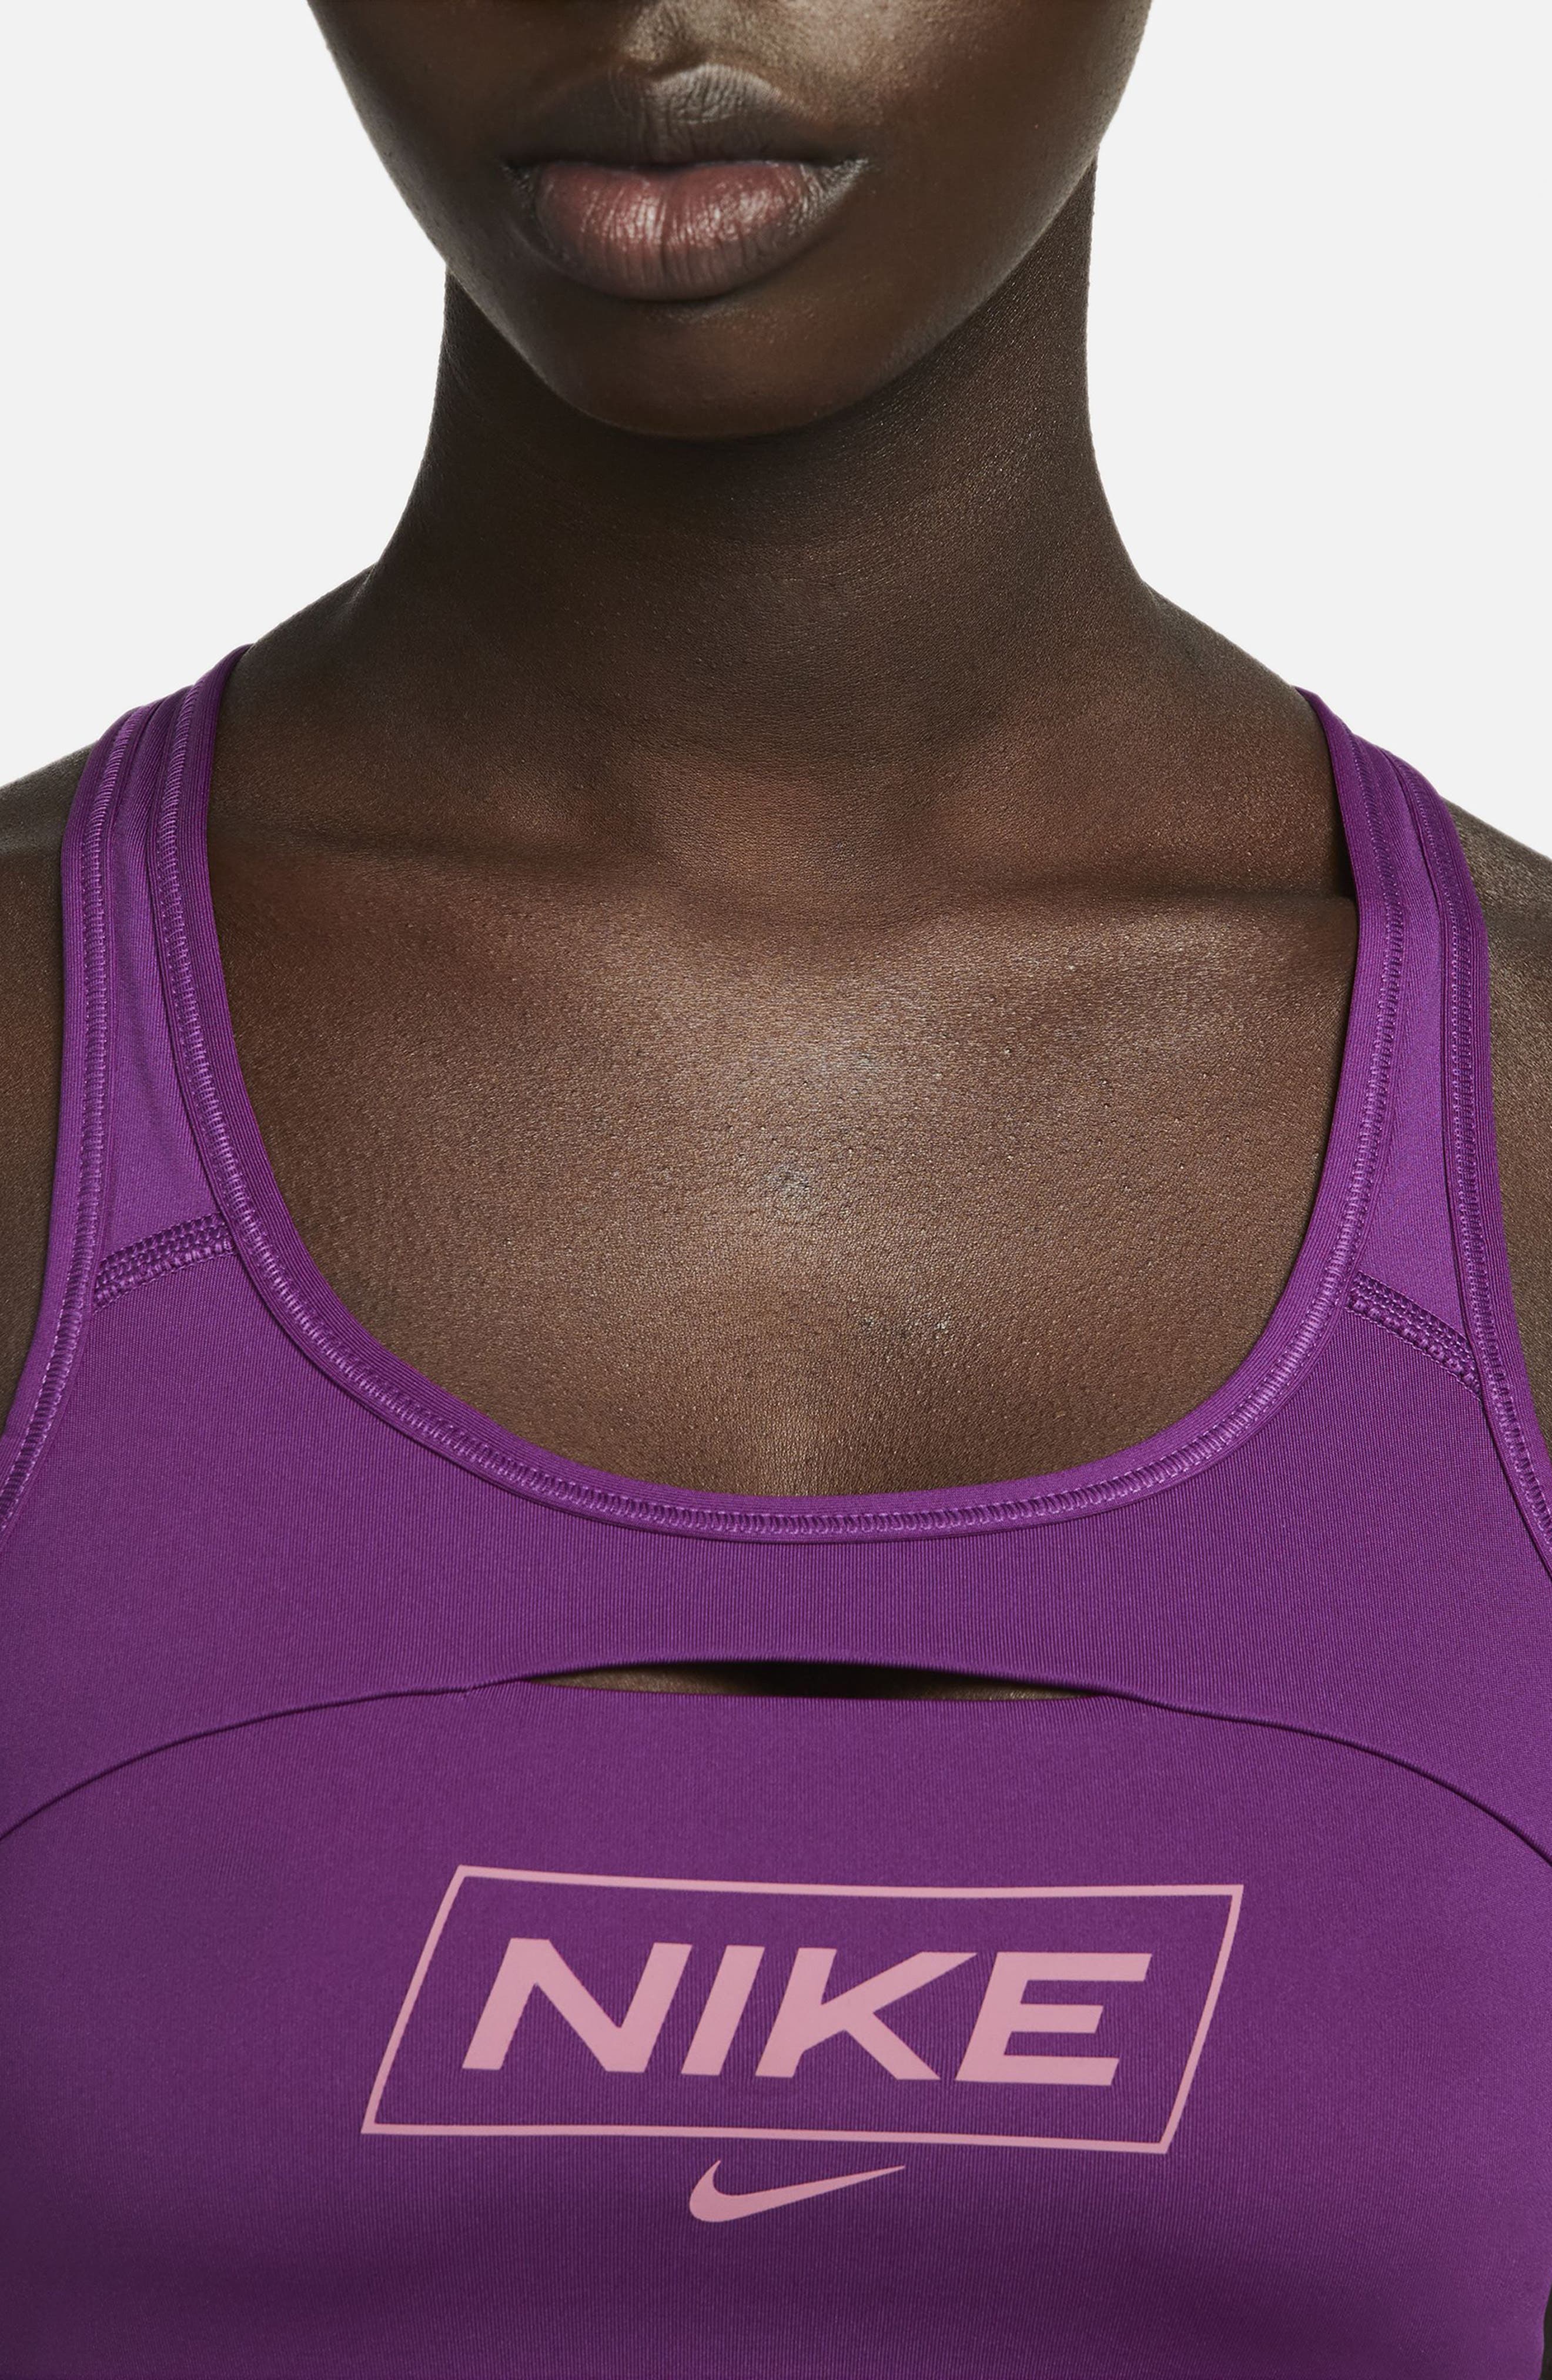 Nike Swoosh Light Support Non-Padded Sports Bra 'Violet Dust/White